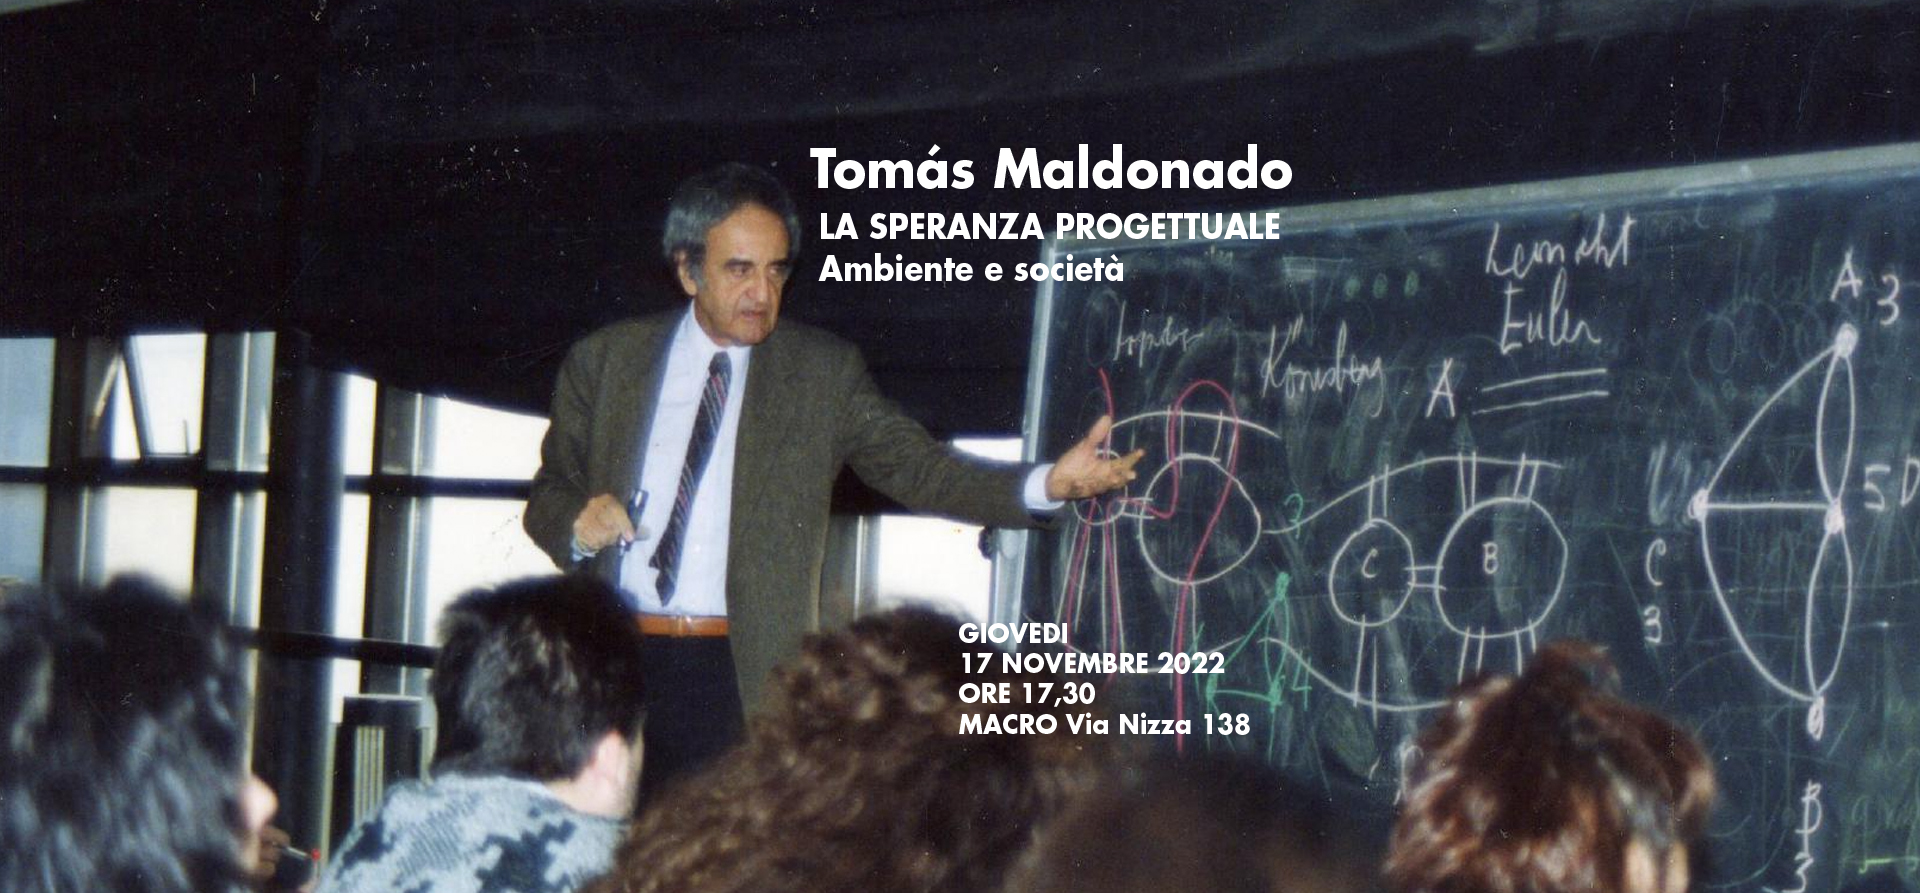 TOMAS MALDONADO. LA SPERANZA PROGETTUALE